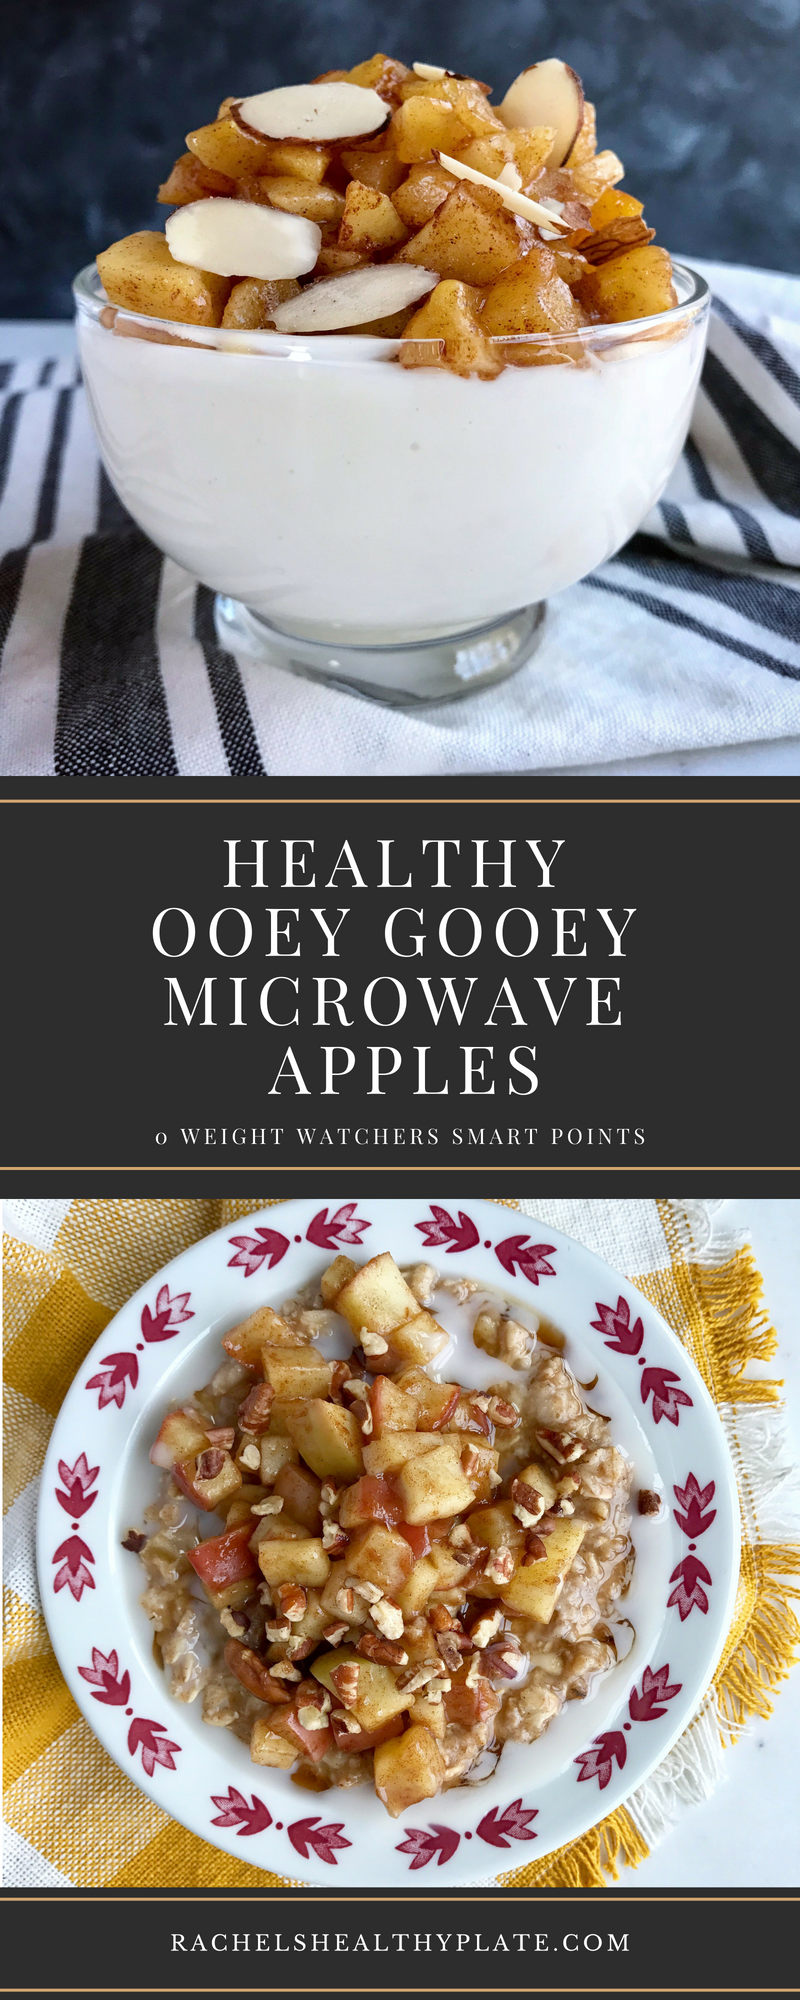 Healthy Ooey Gooey Microwave Apples - 0 Weight Watchers Smart Points | RachelsHealthyPlate.com